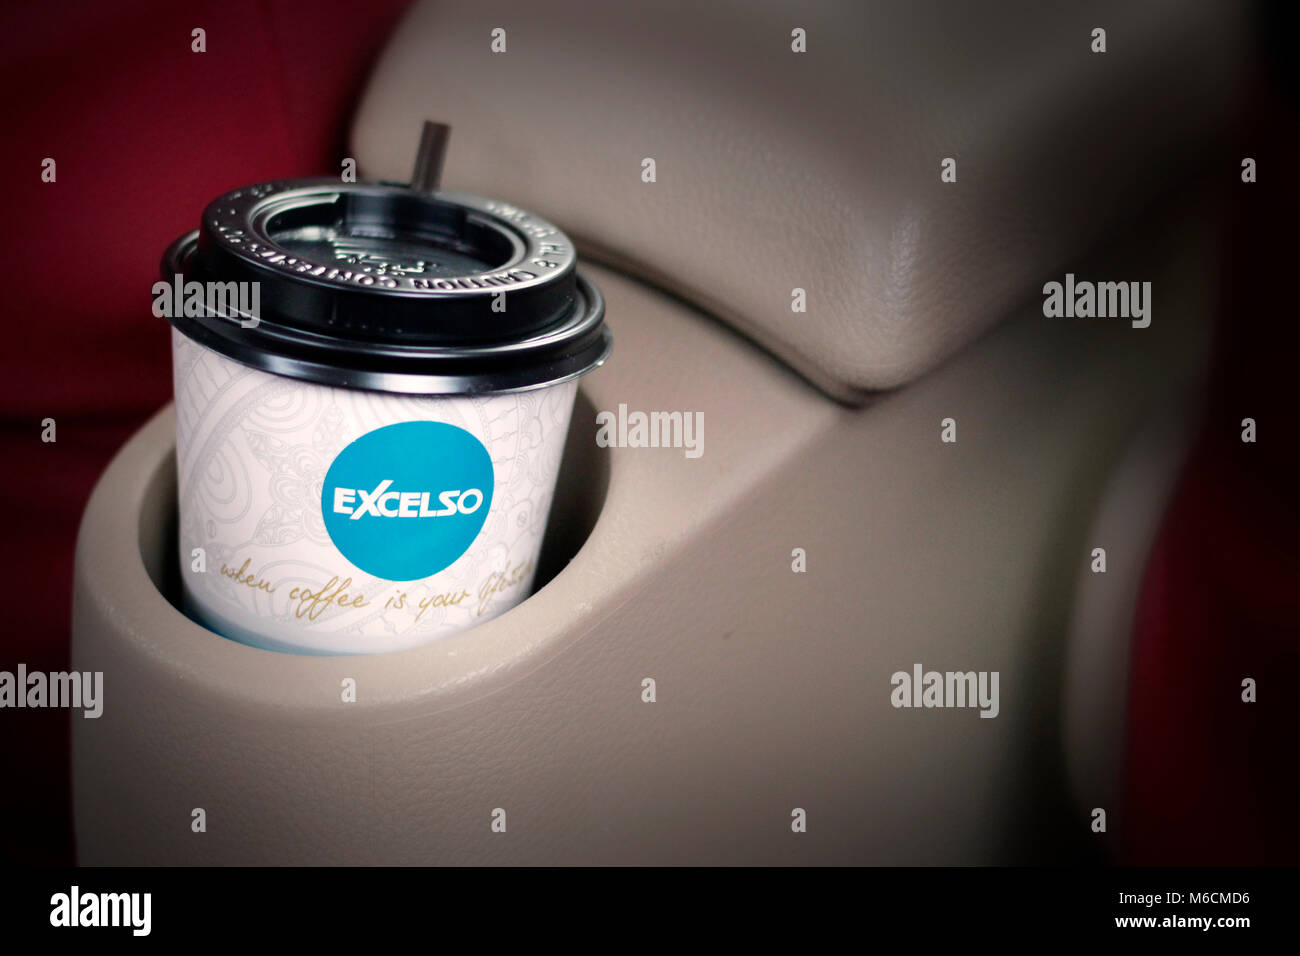 Una tazza di caffè excelso in una macchina e un rosso sedile passeggero Foto Stock